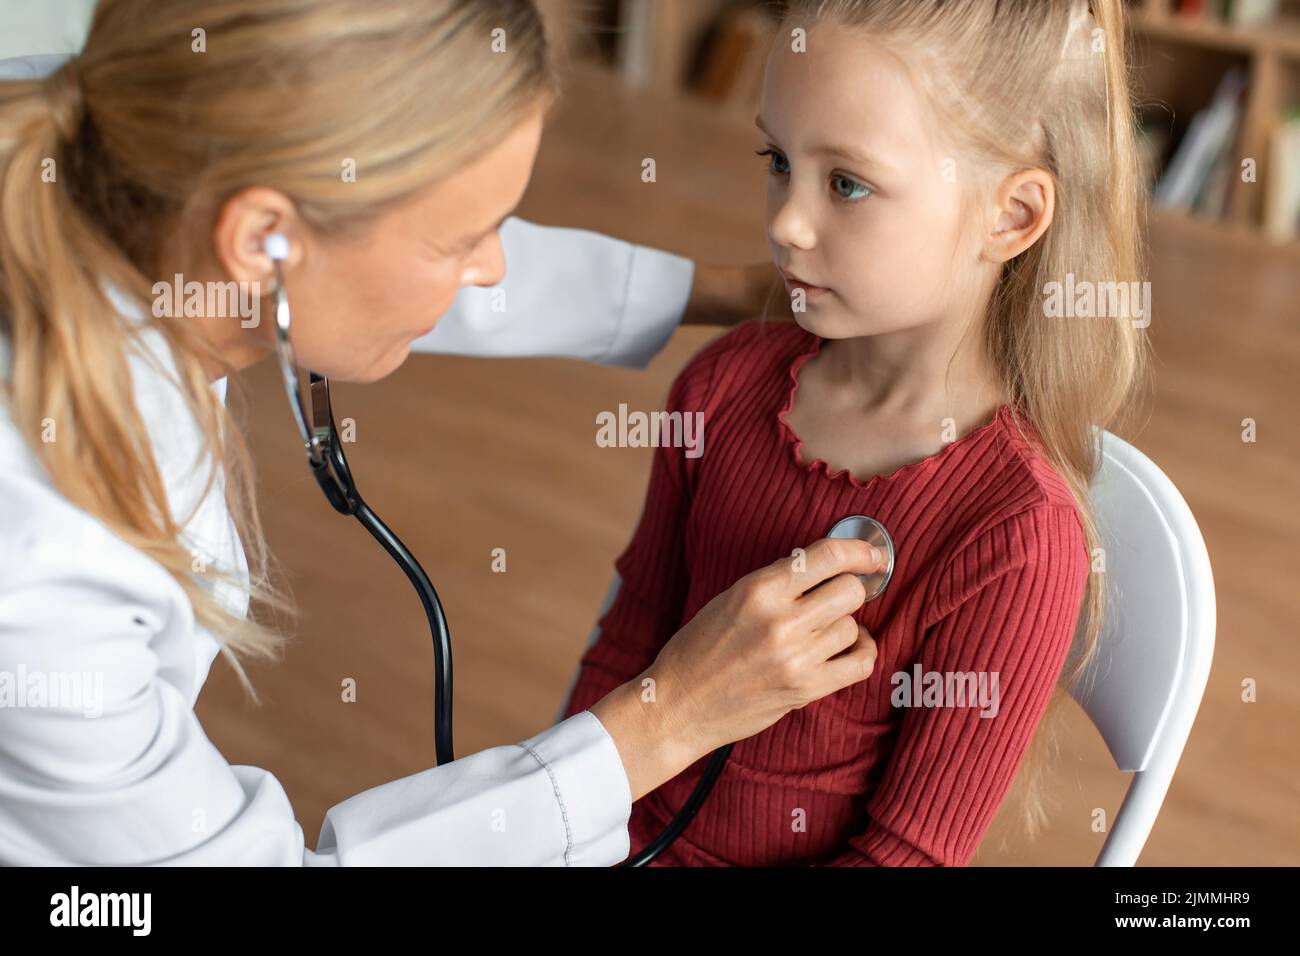 Ärztin, die die Lungen des Kindes während der medizinischen Untersuchung überprüft, Kinderärztin, die Stethoskop verwendet, um kleine Patienten zu untersuchen Stockfoto